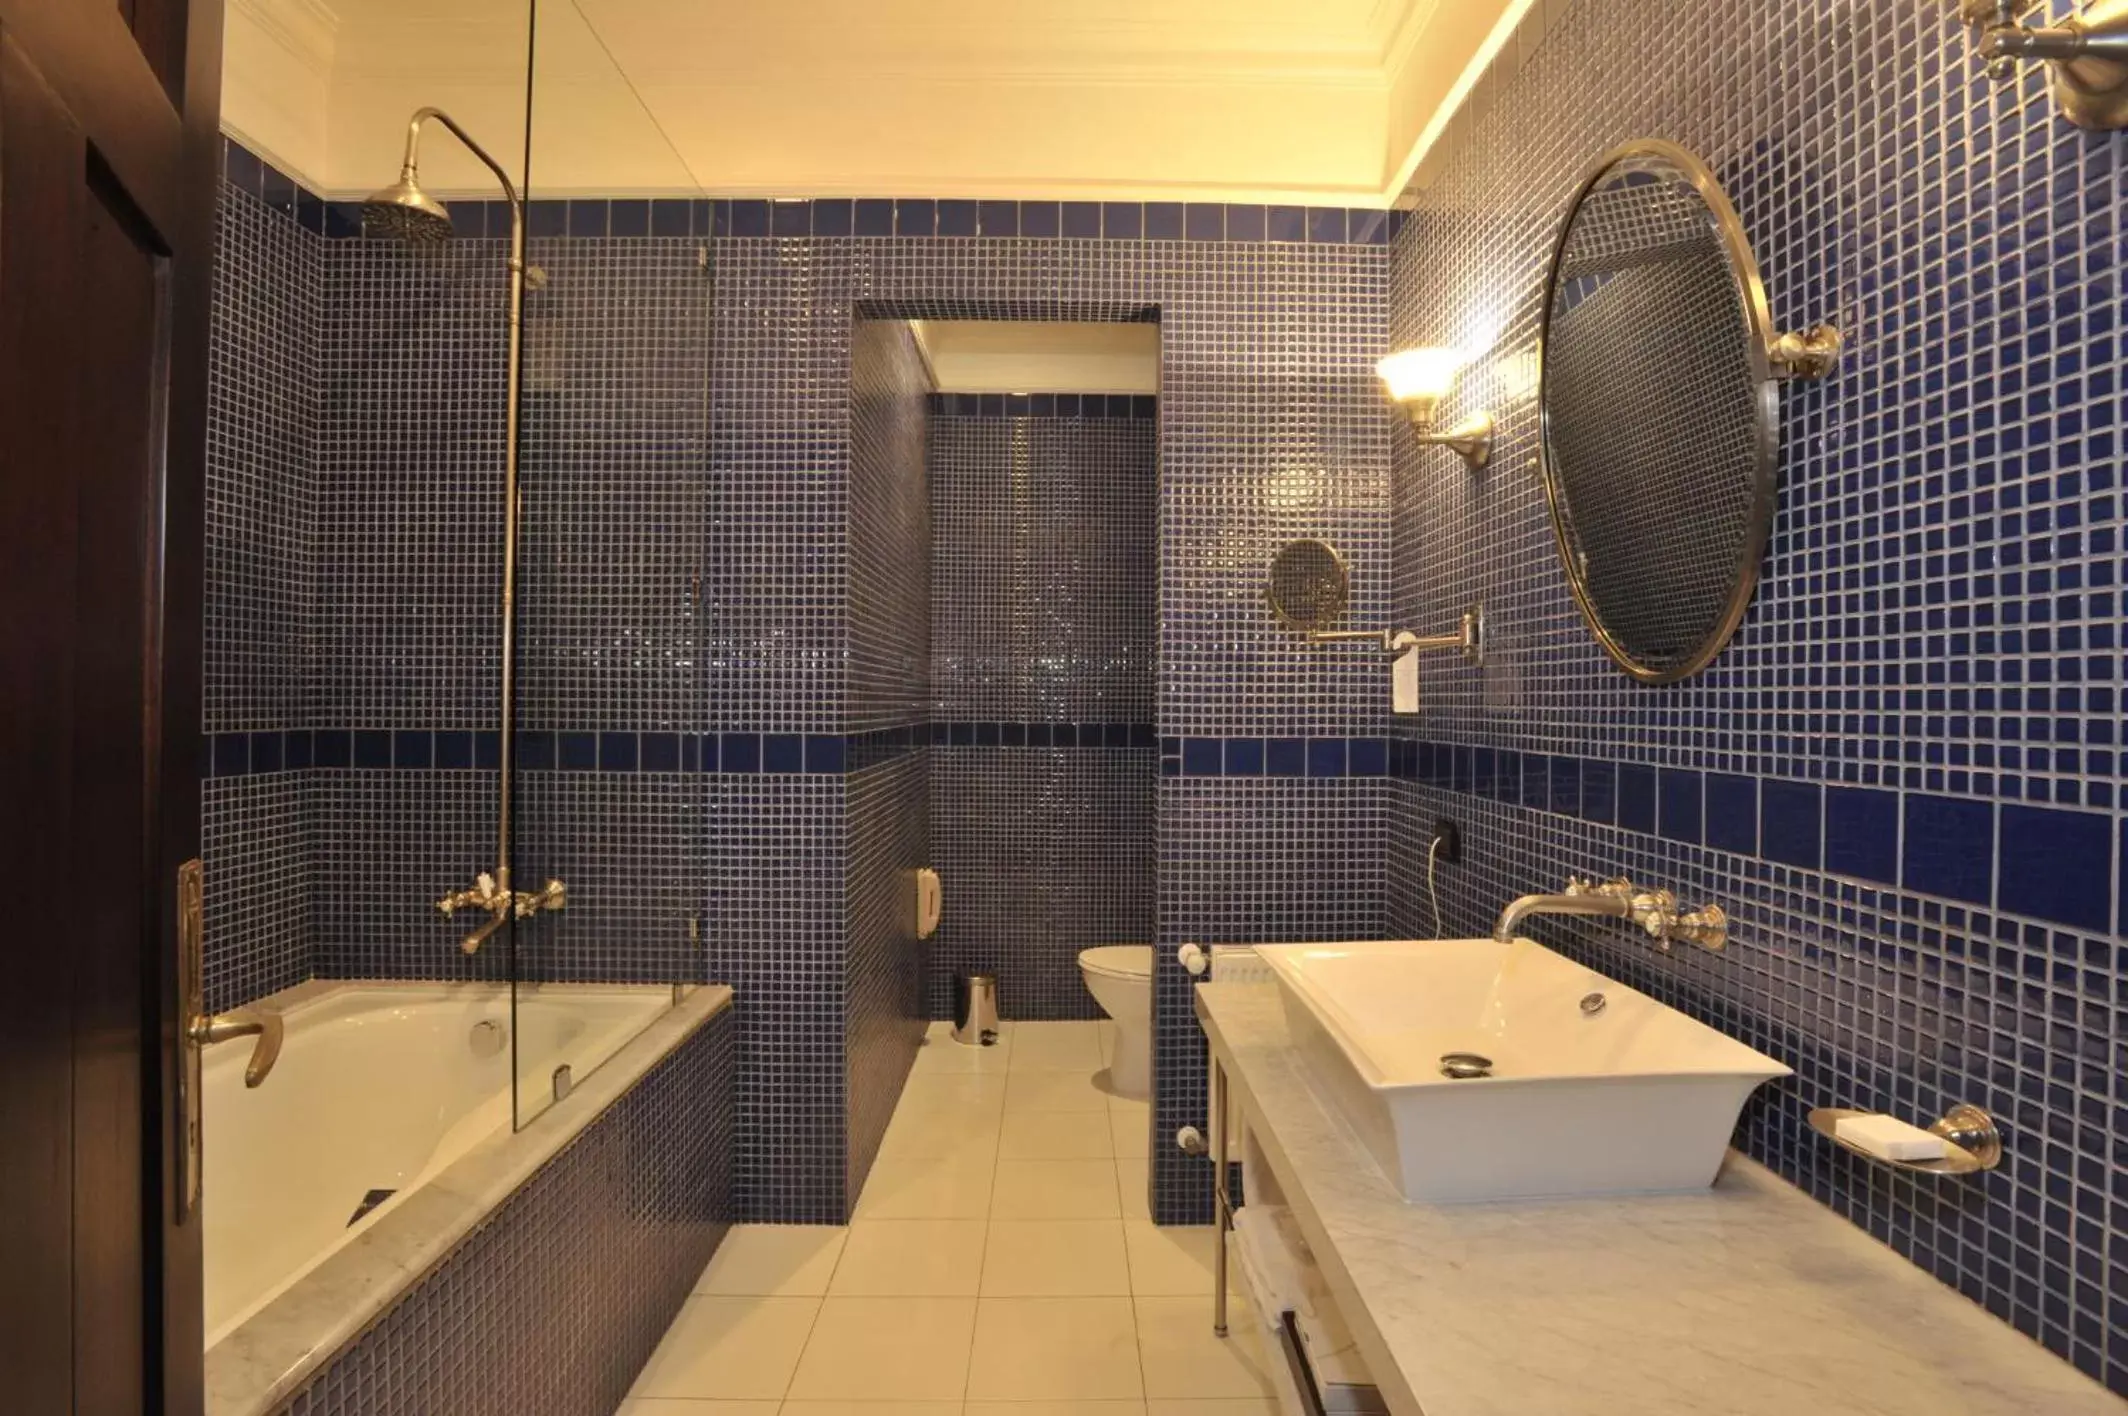 Bathroom in Hotel Casa Higueras